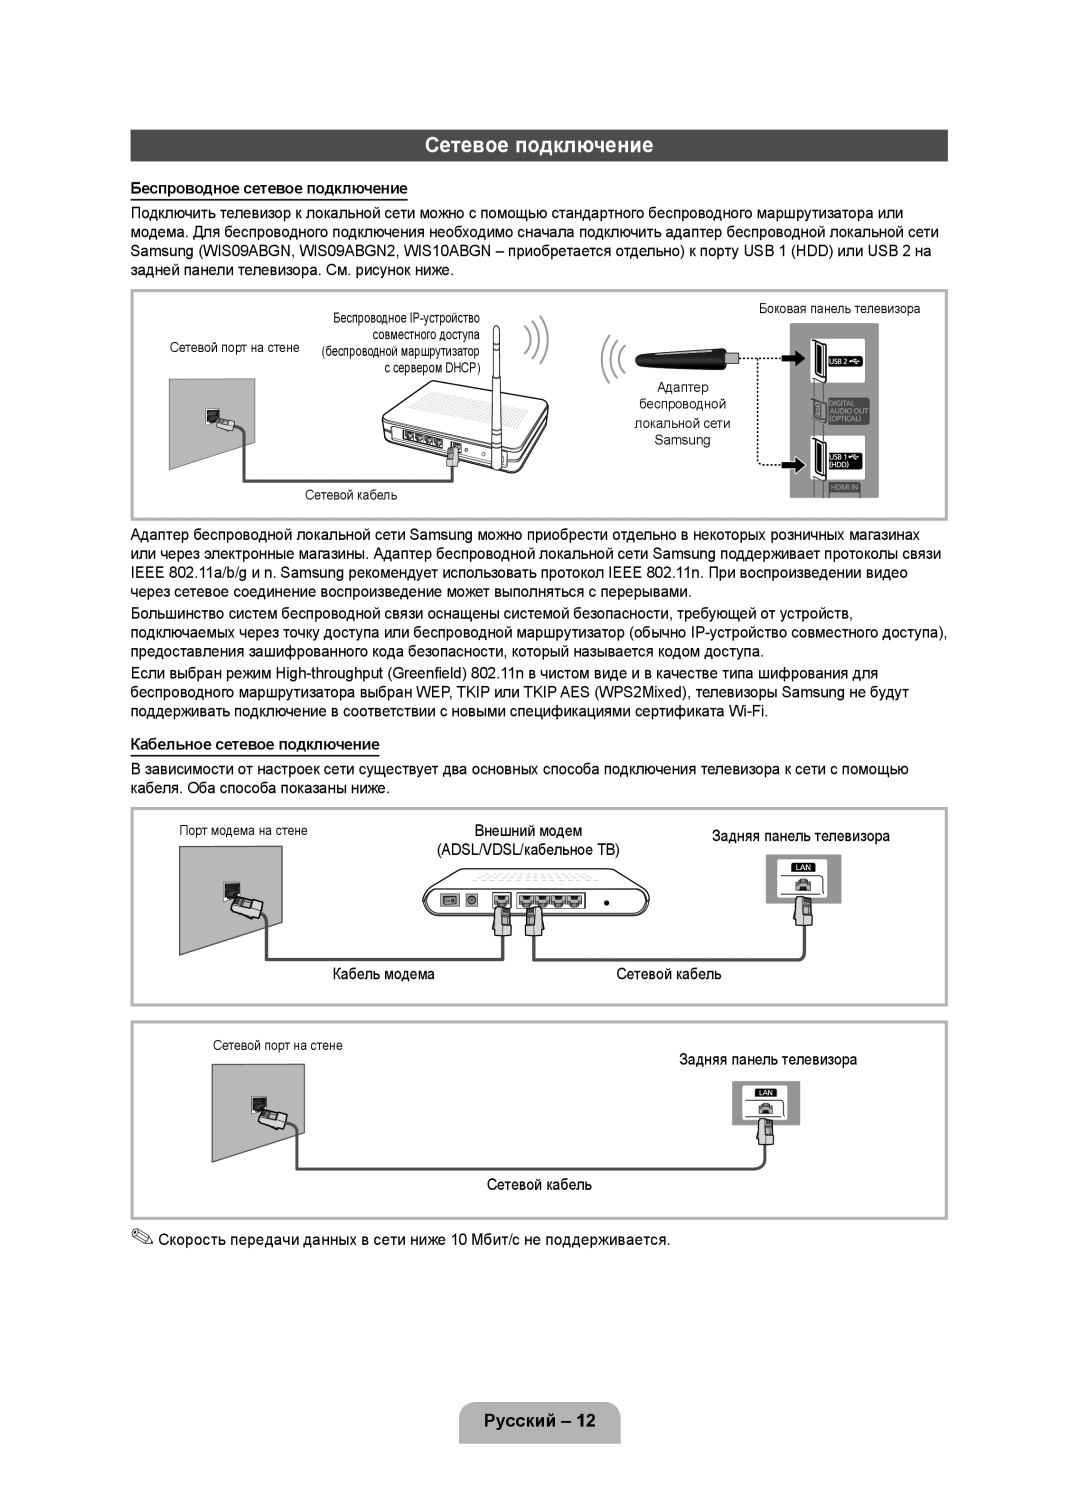 Samsung UE46D5000PWXZT manual Сетевое подключение, Русский, Беспроводное сетевое подключение, Кабельное сетевое подключение 